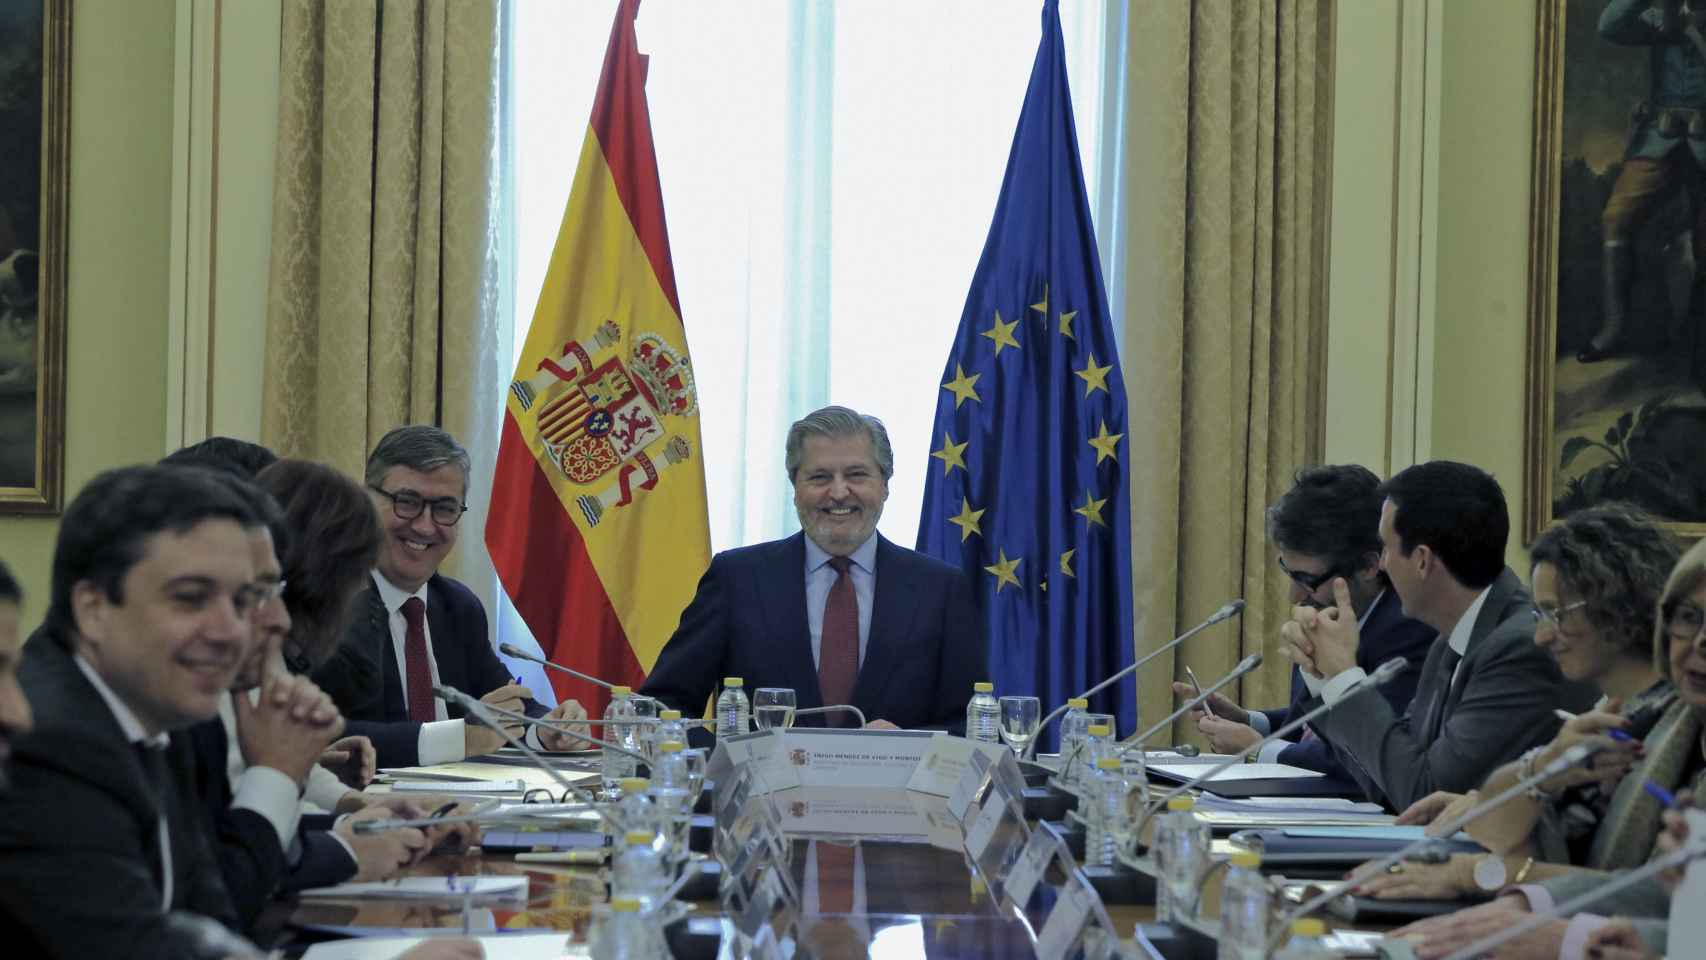 El ministro de Educación, Íñigo Méndez de Vigo, preside la reunión con los consejeros de las comunidades autónomas para posponer las reválidas / EFE